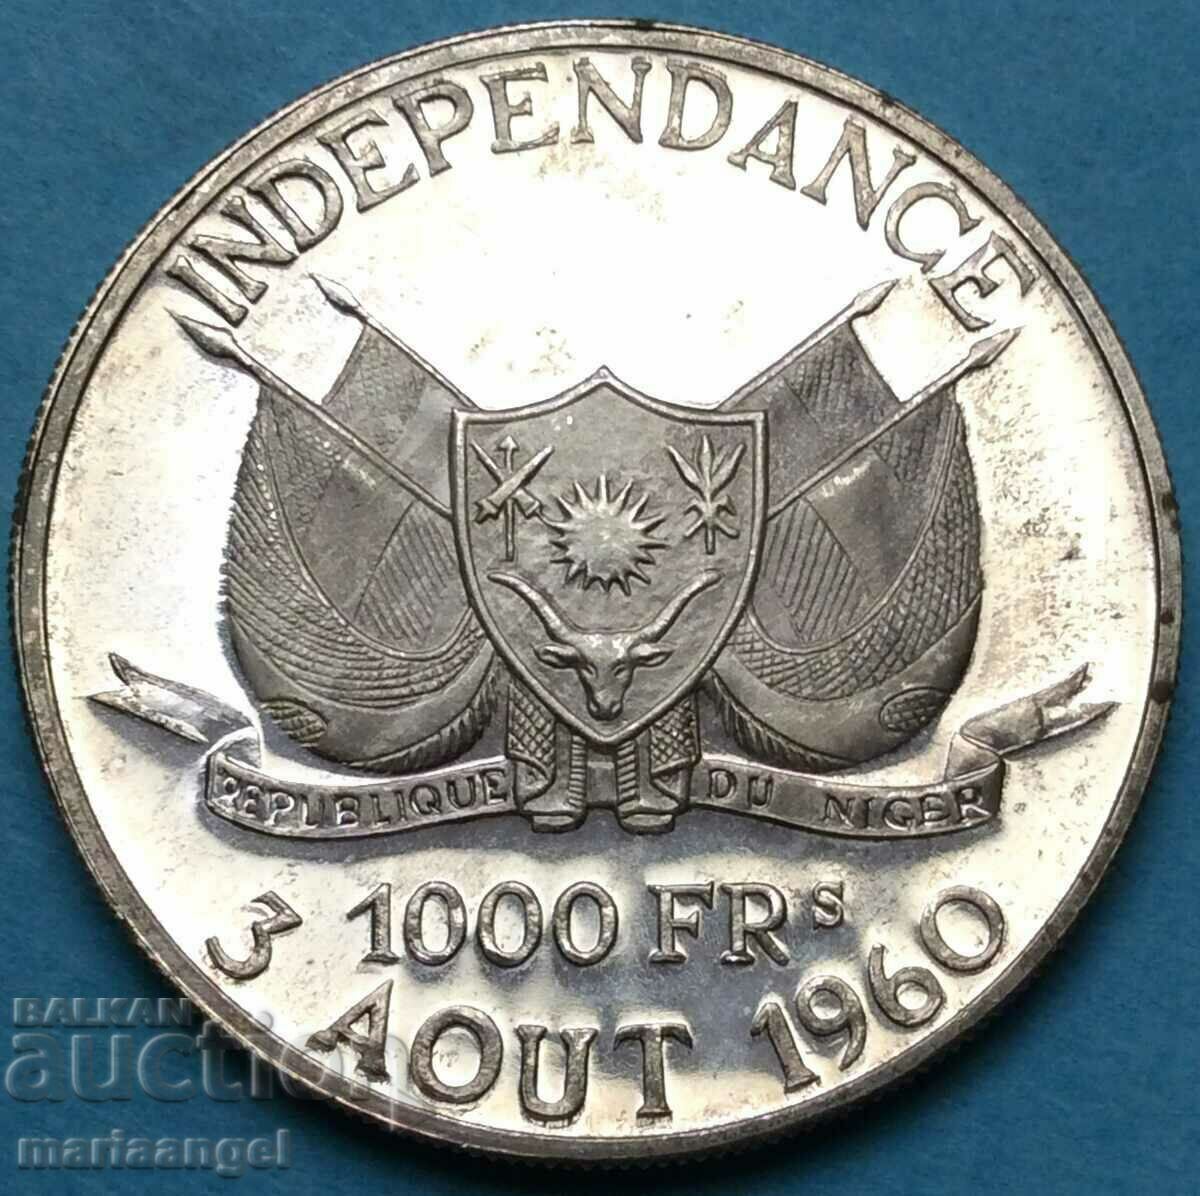 Niger 1000 φράγκα 1960 mintage 1000 τμχ ΑΠΟΔΕΙΞΗ 19,97 γρ ασήμι